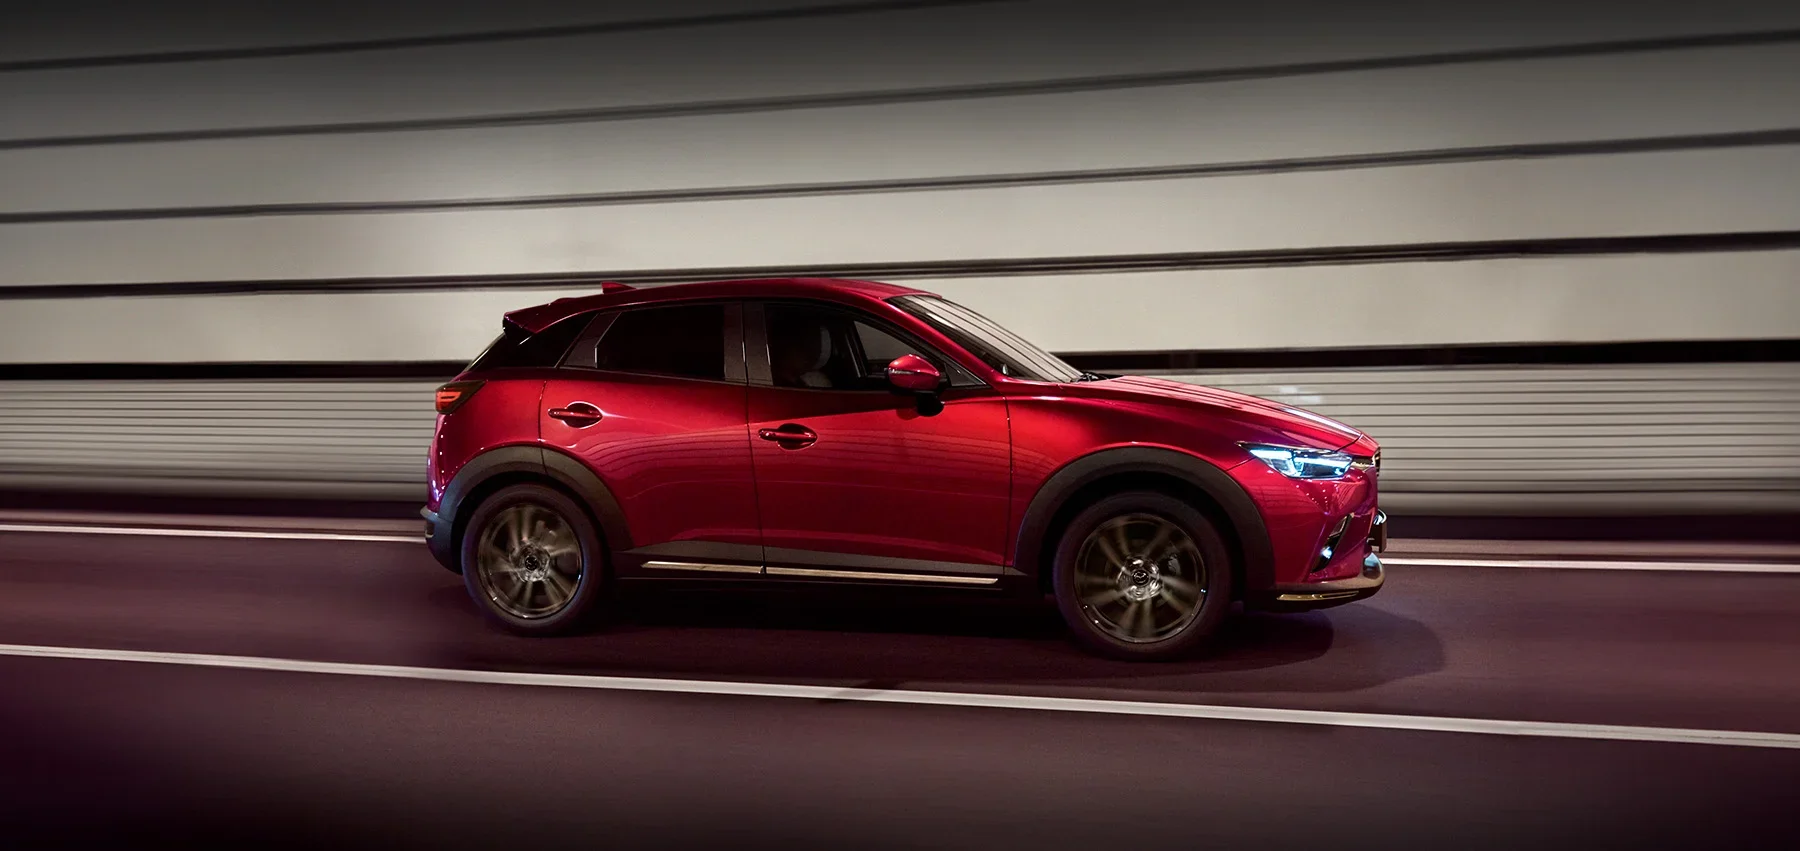 Mazda CX-3 - new vehicle page hero image